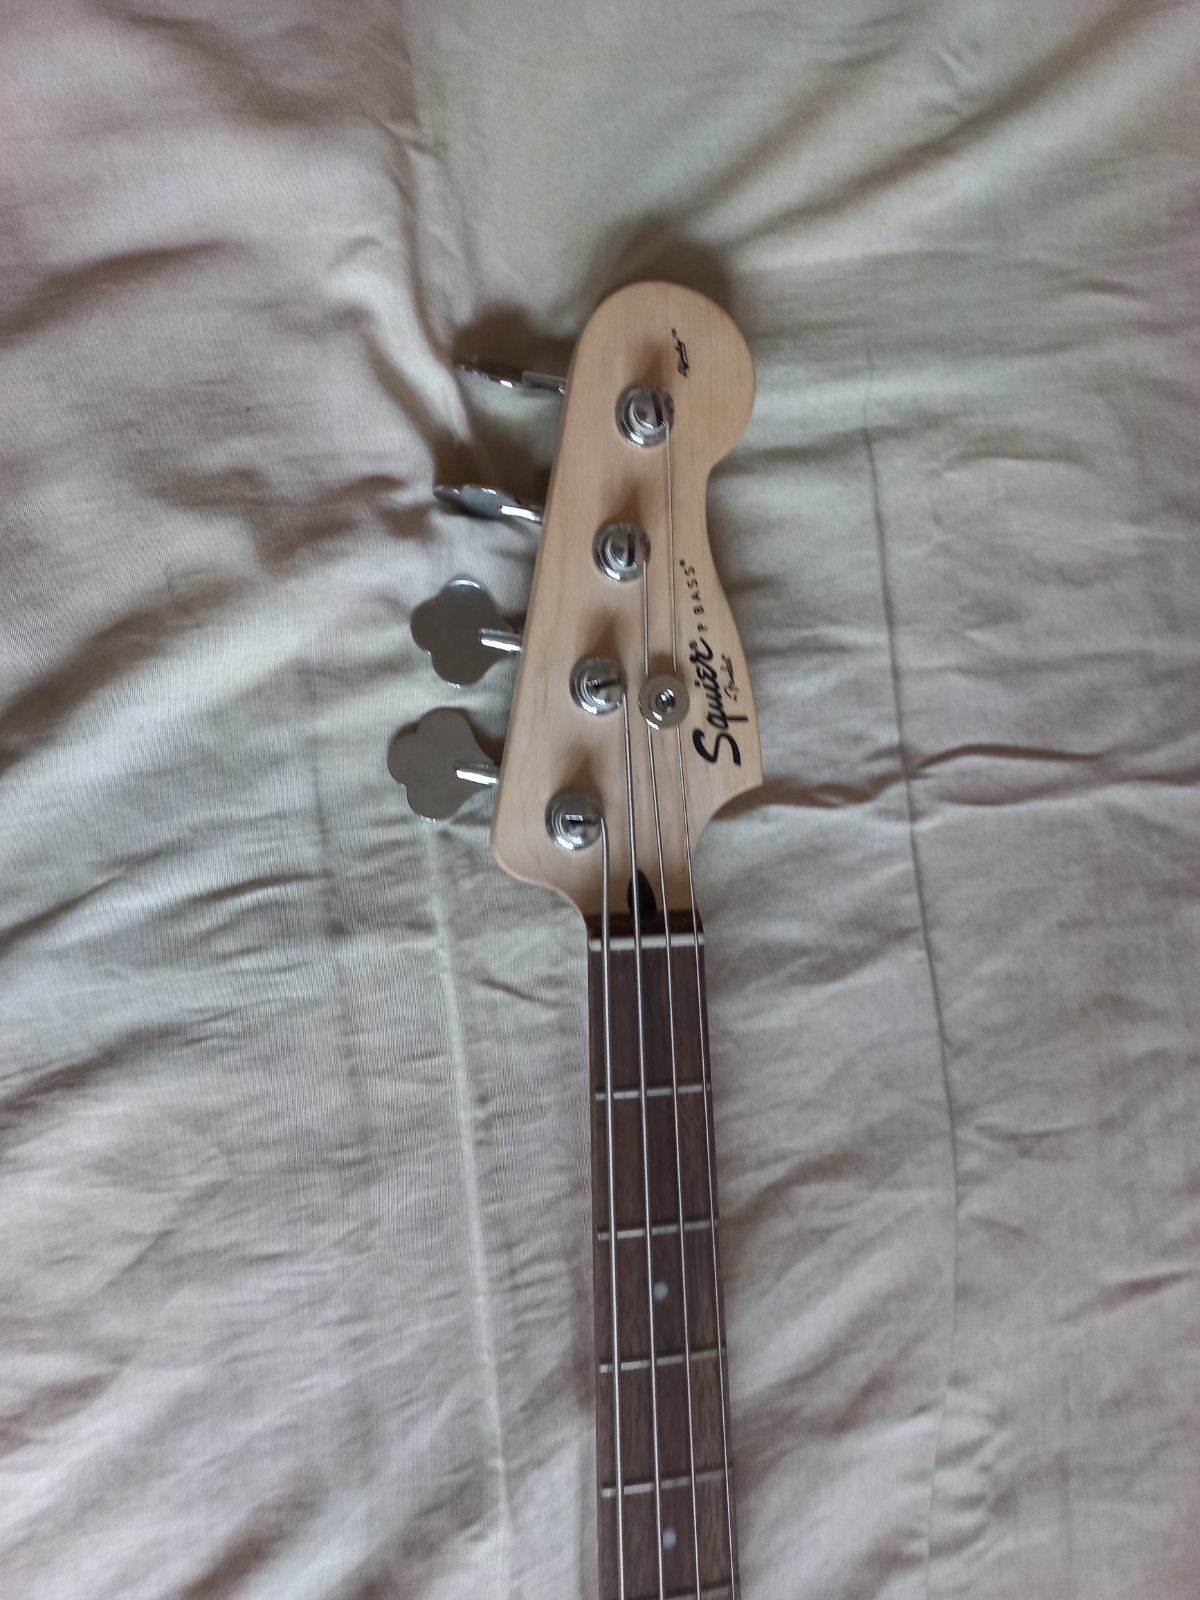 Fender Squier бас китара и усилвател